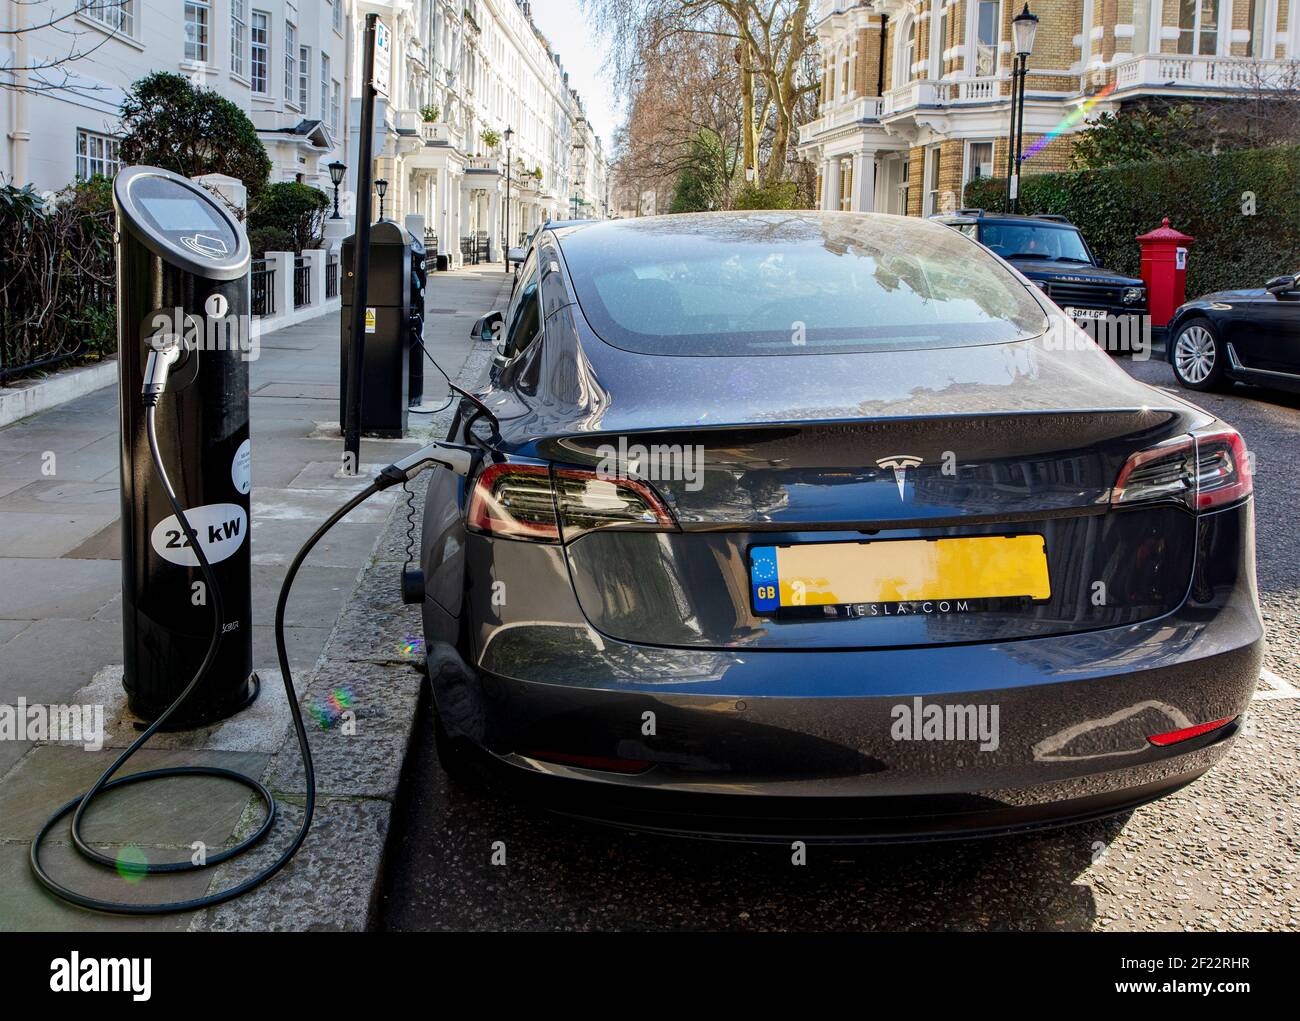 L'auto elettrica Tesla viene caricata presso un punto di ricarica a Kensington, Londra Foto Stock